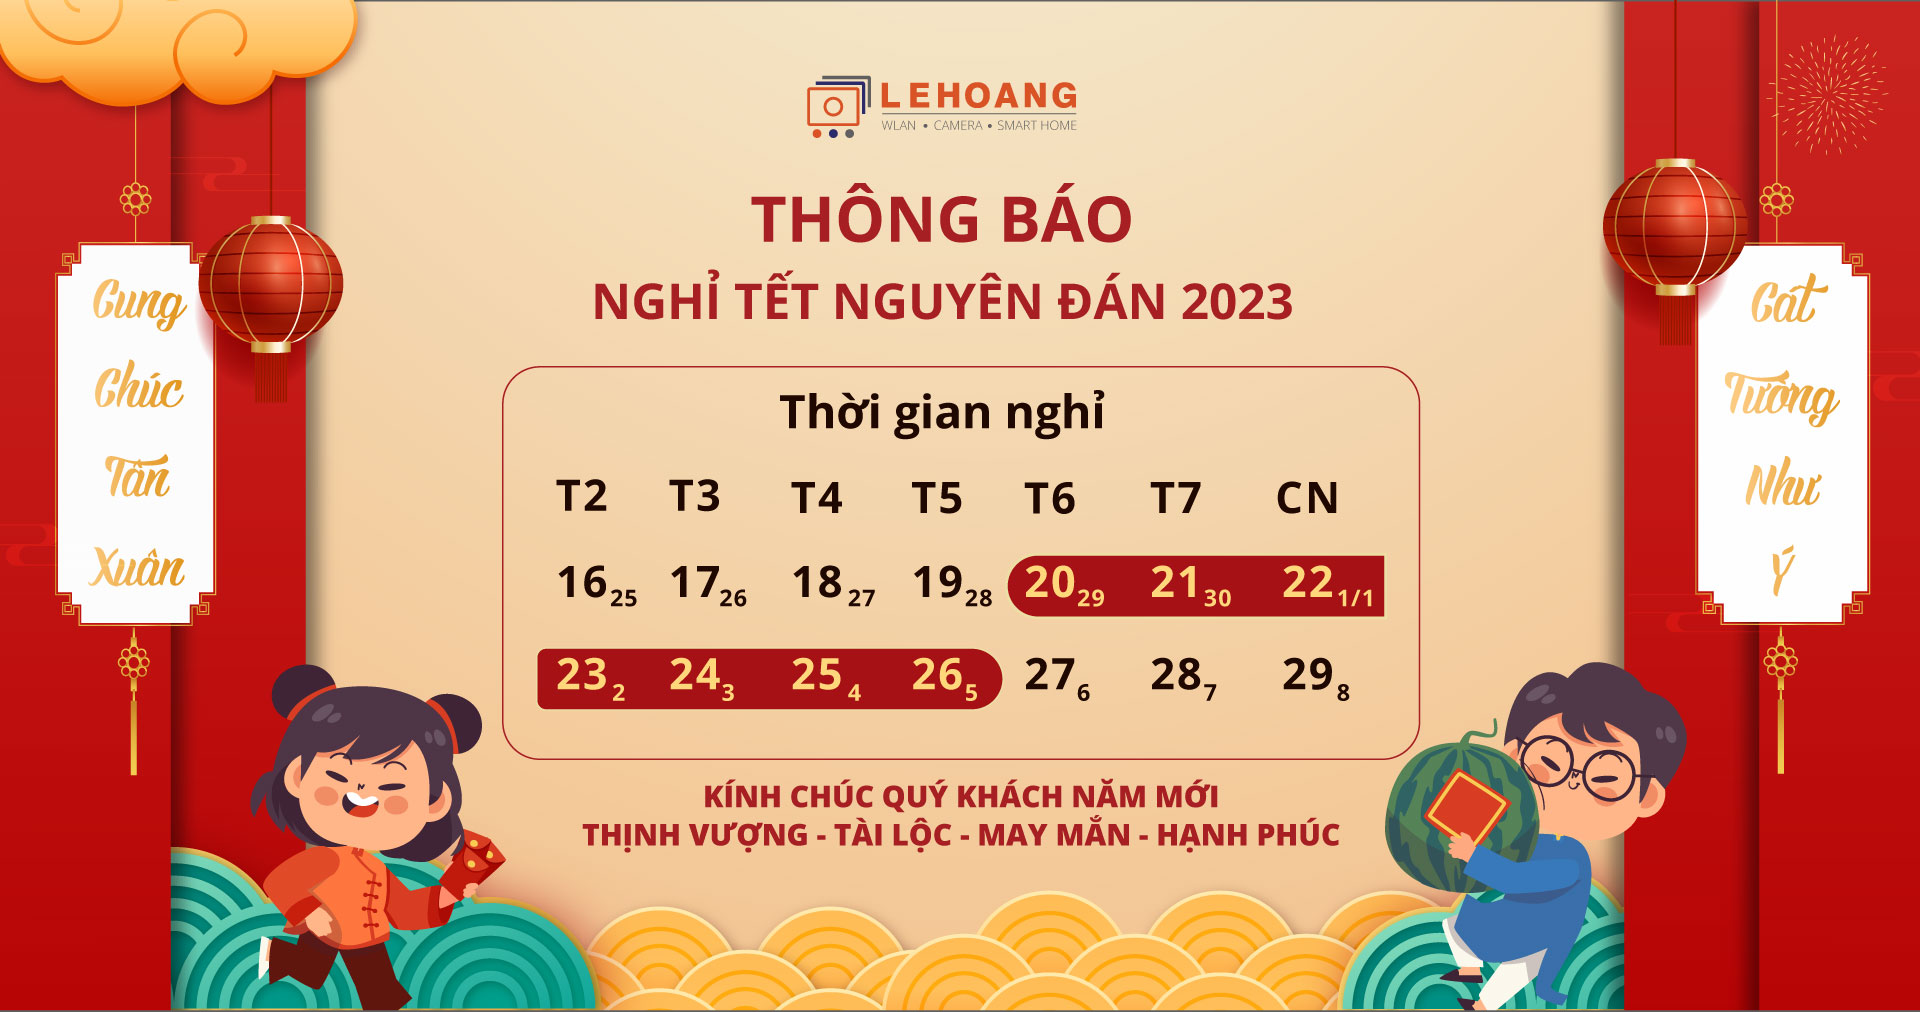 lich-nghi-le-2023-hikvision-vietnam